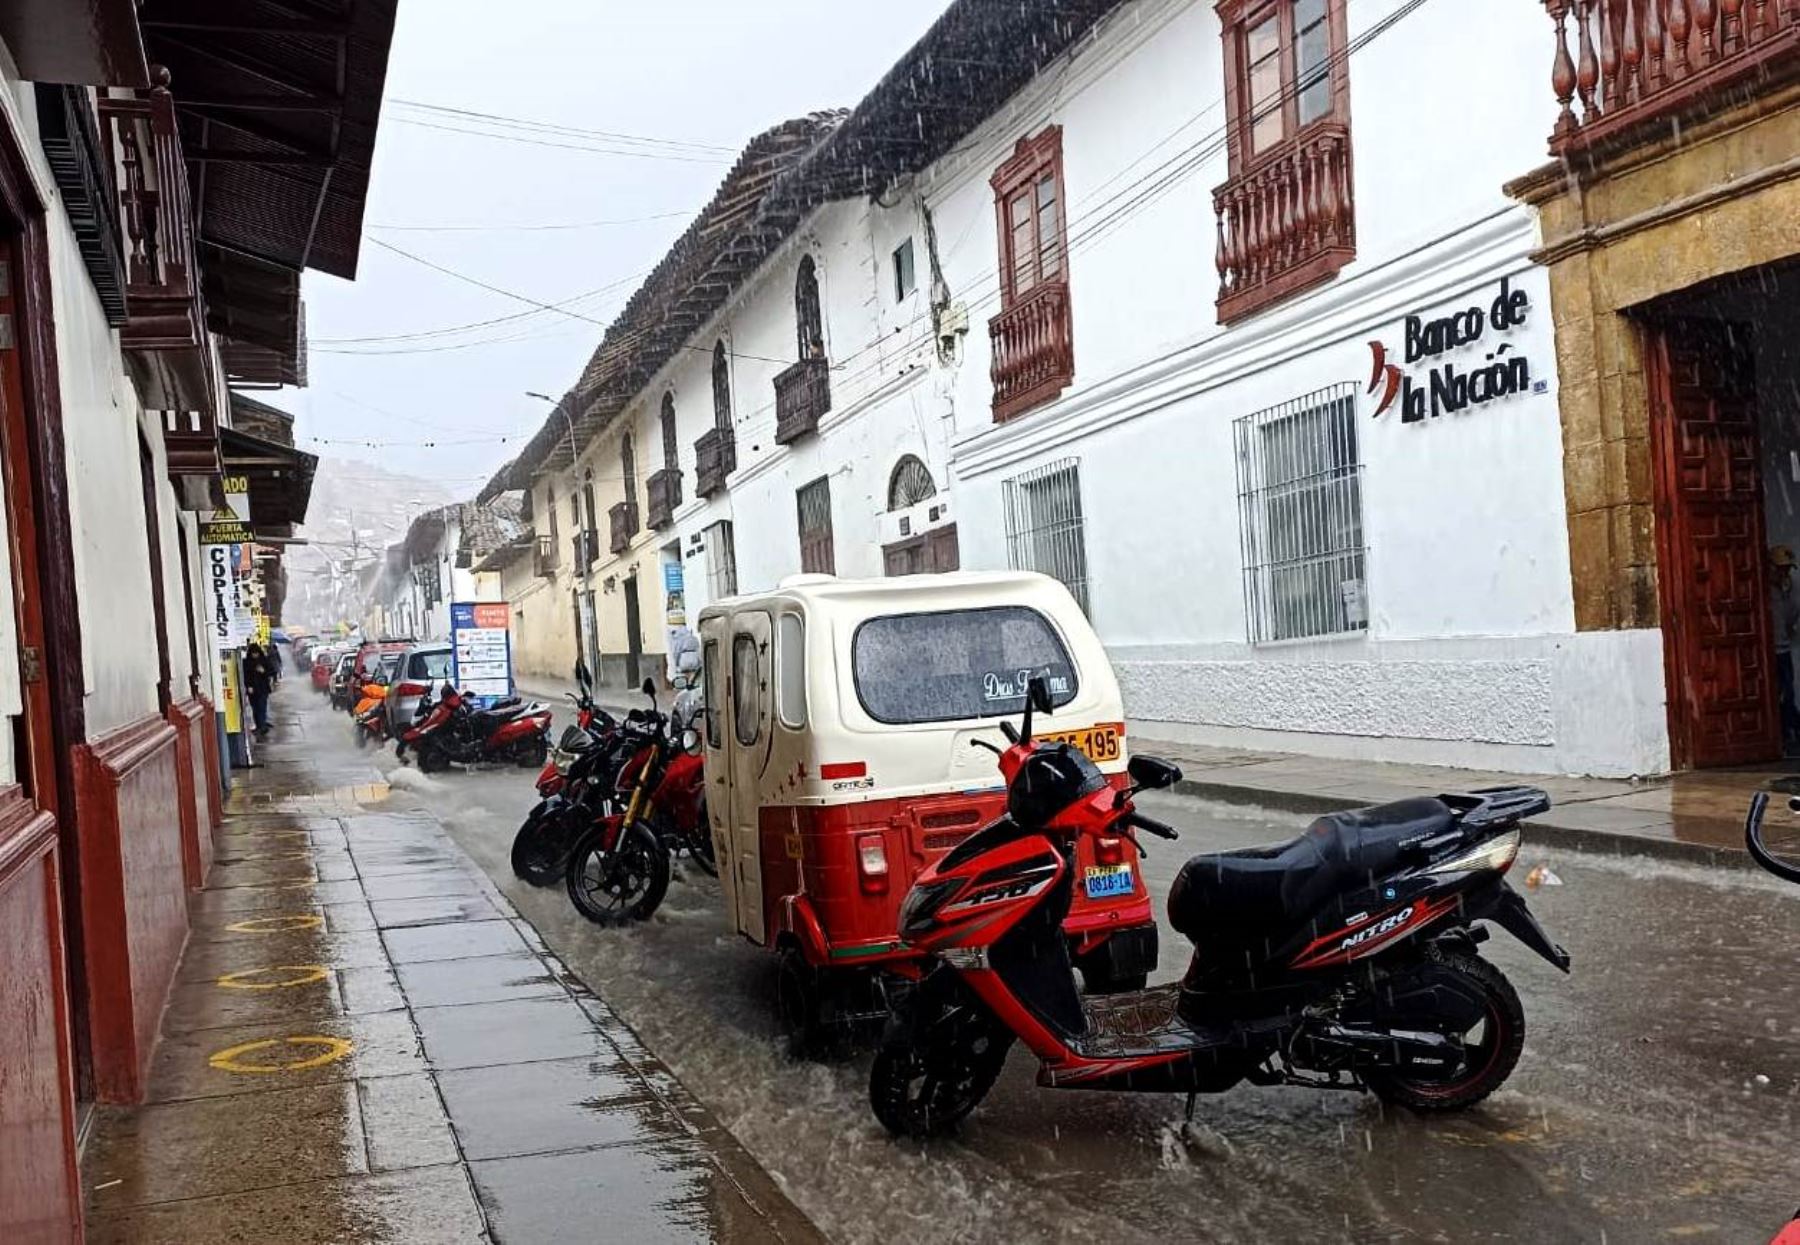 La ciudad de Cajamarca soportará lluvias de ligera intensidad durante este fin de semana, anunció el Senamhi. Foto: Eduard Lozano.